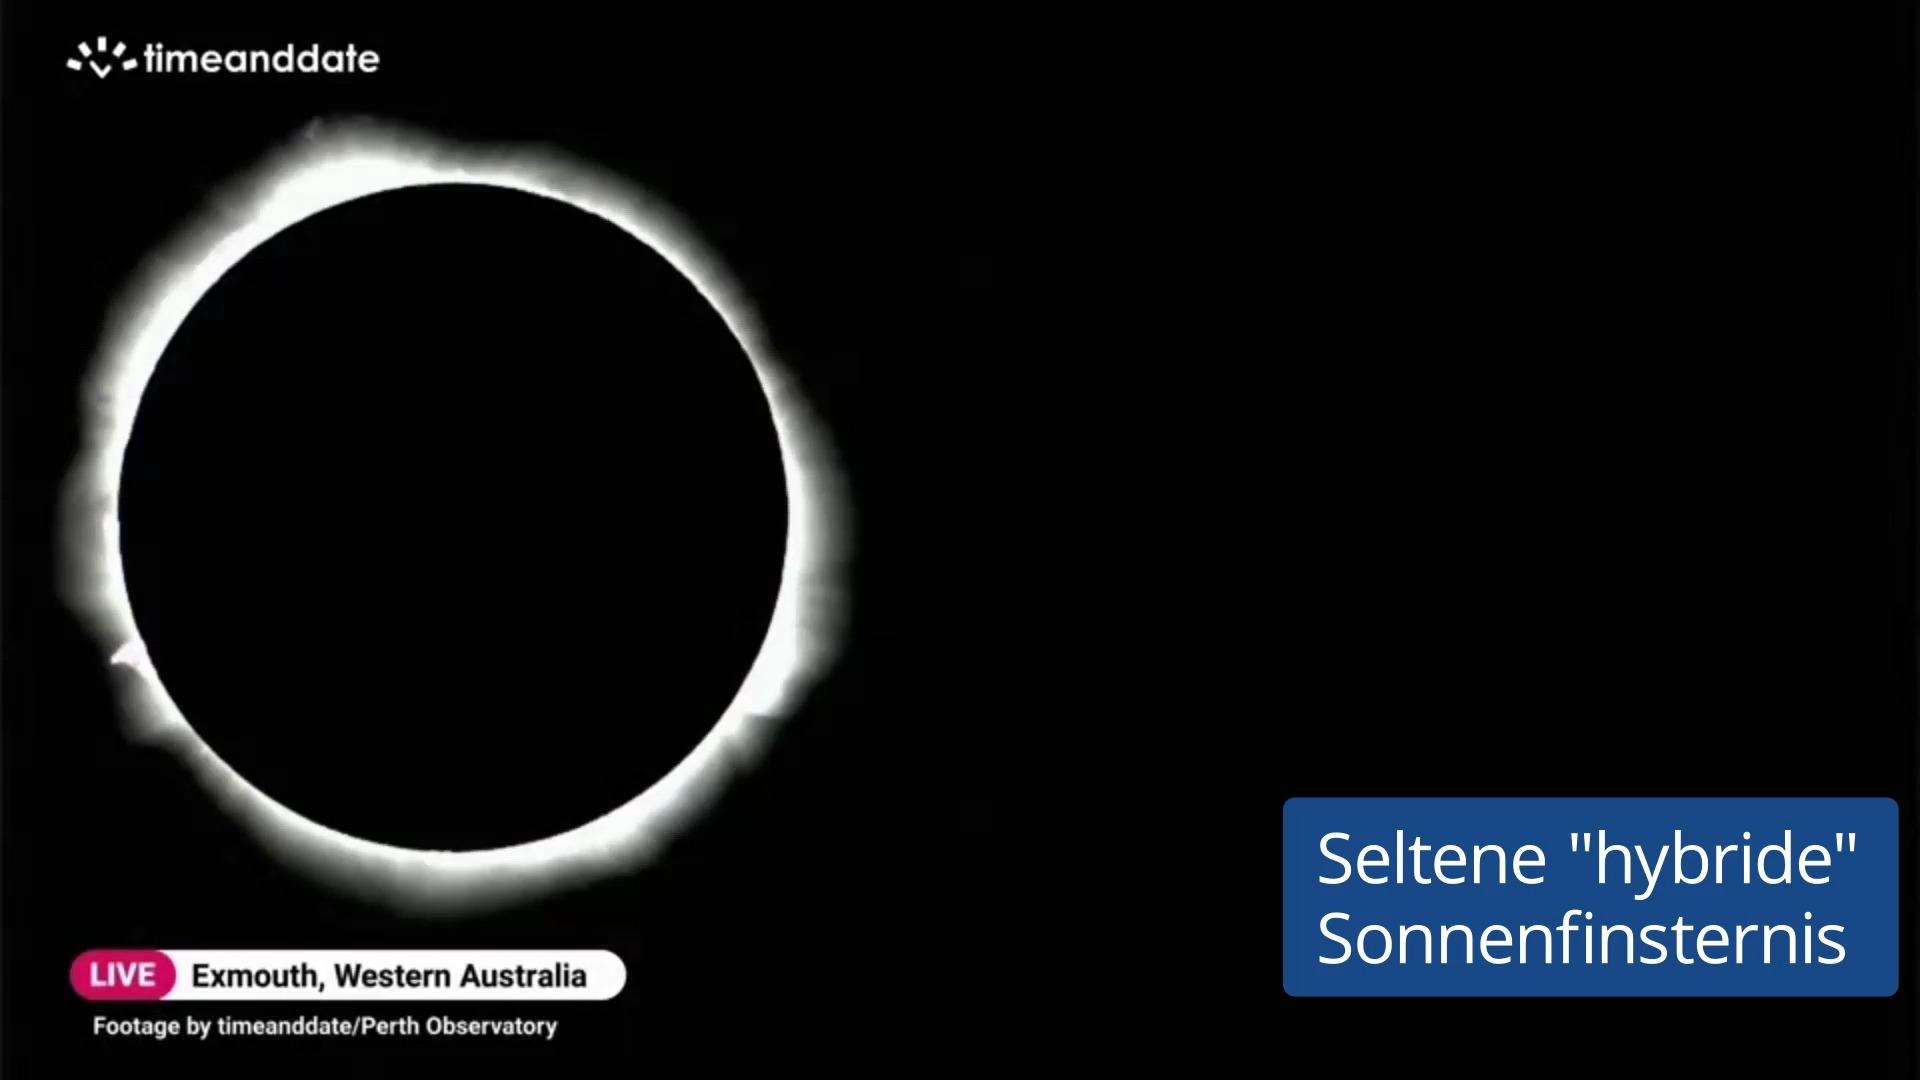 Australien erlebt seltenes Himmelsspektakel Hybride Sonnenfinsternis